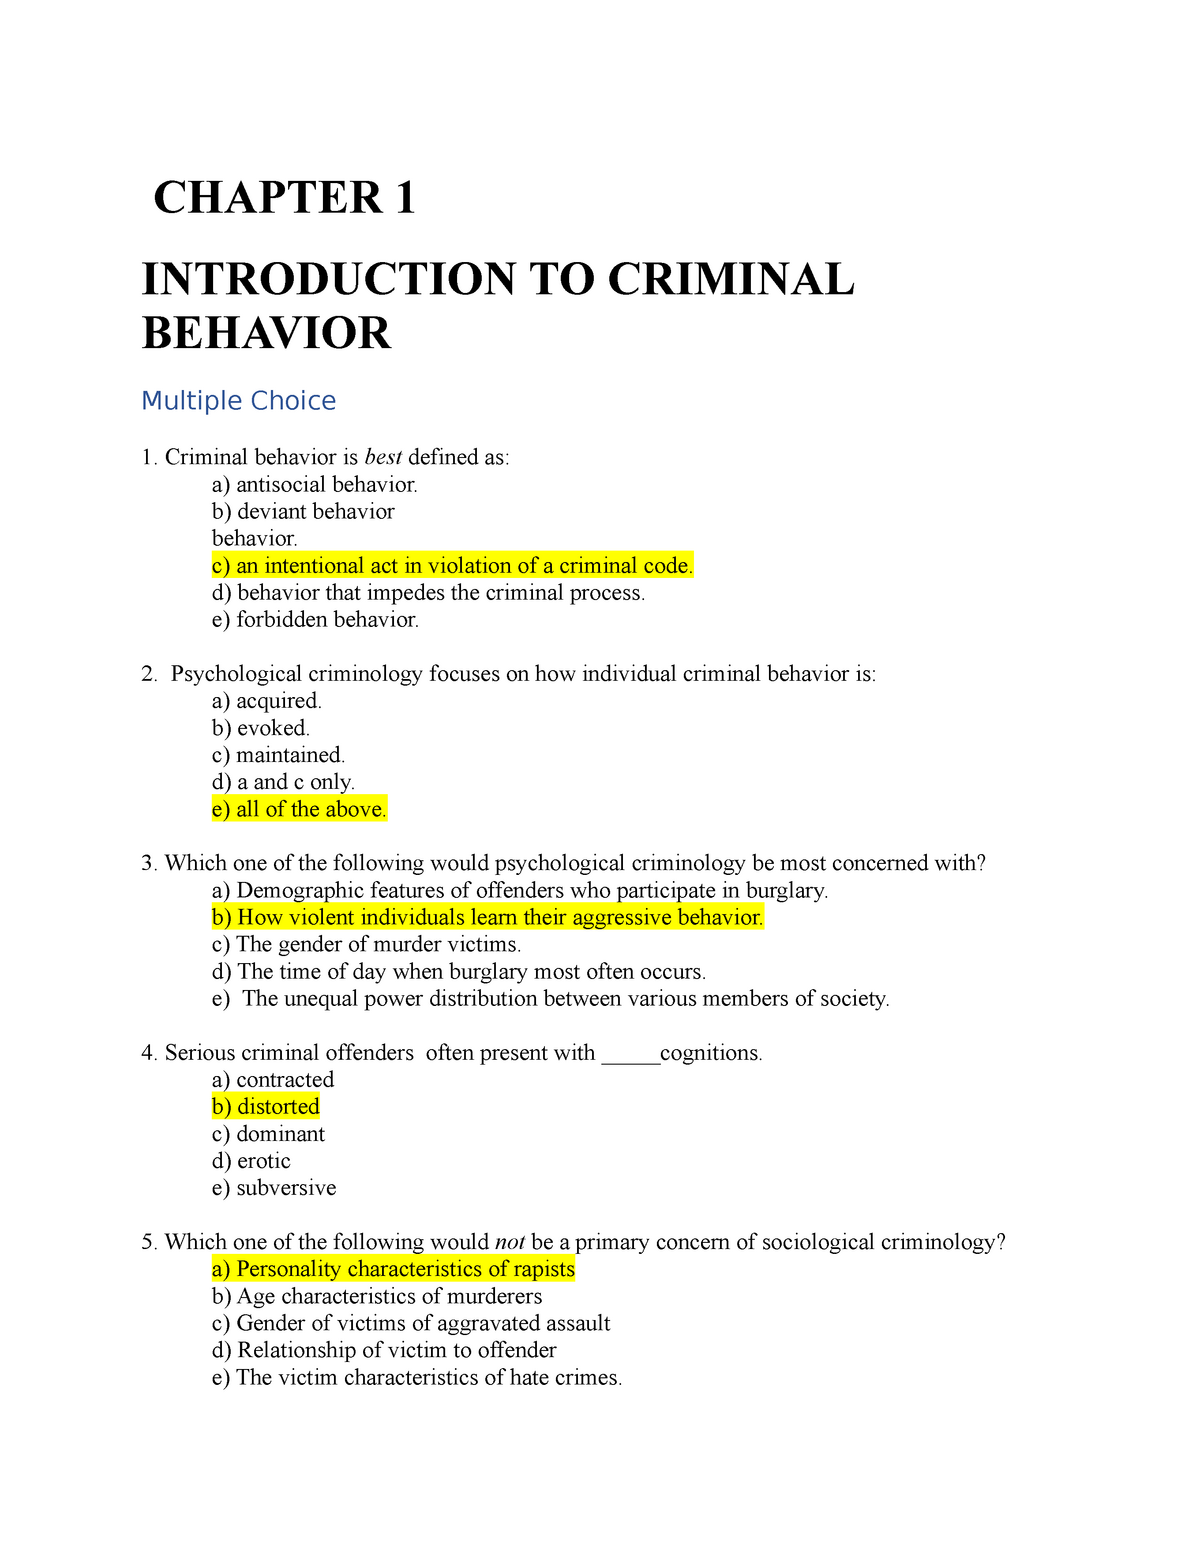 criminal behavior essay topics